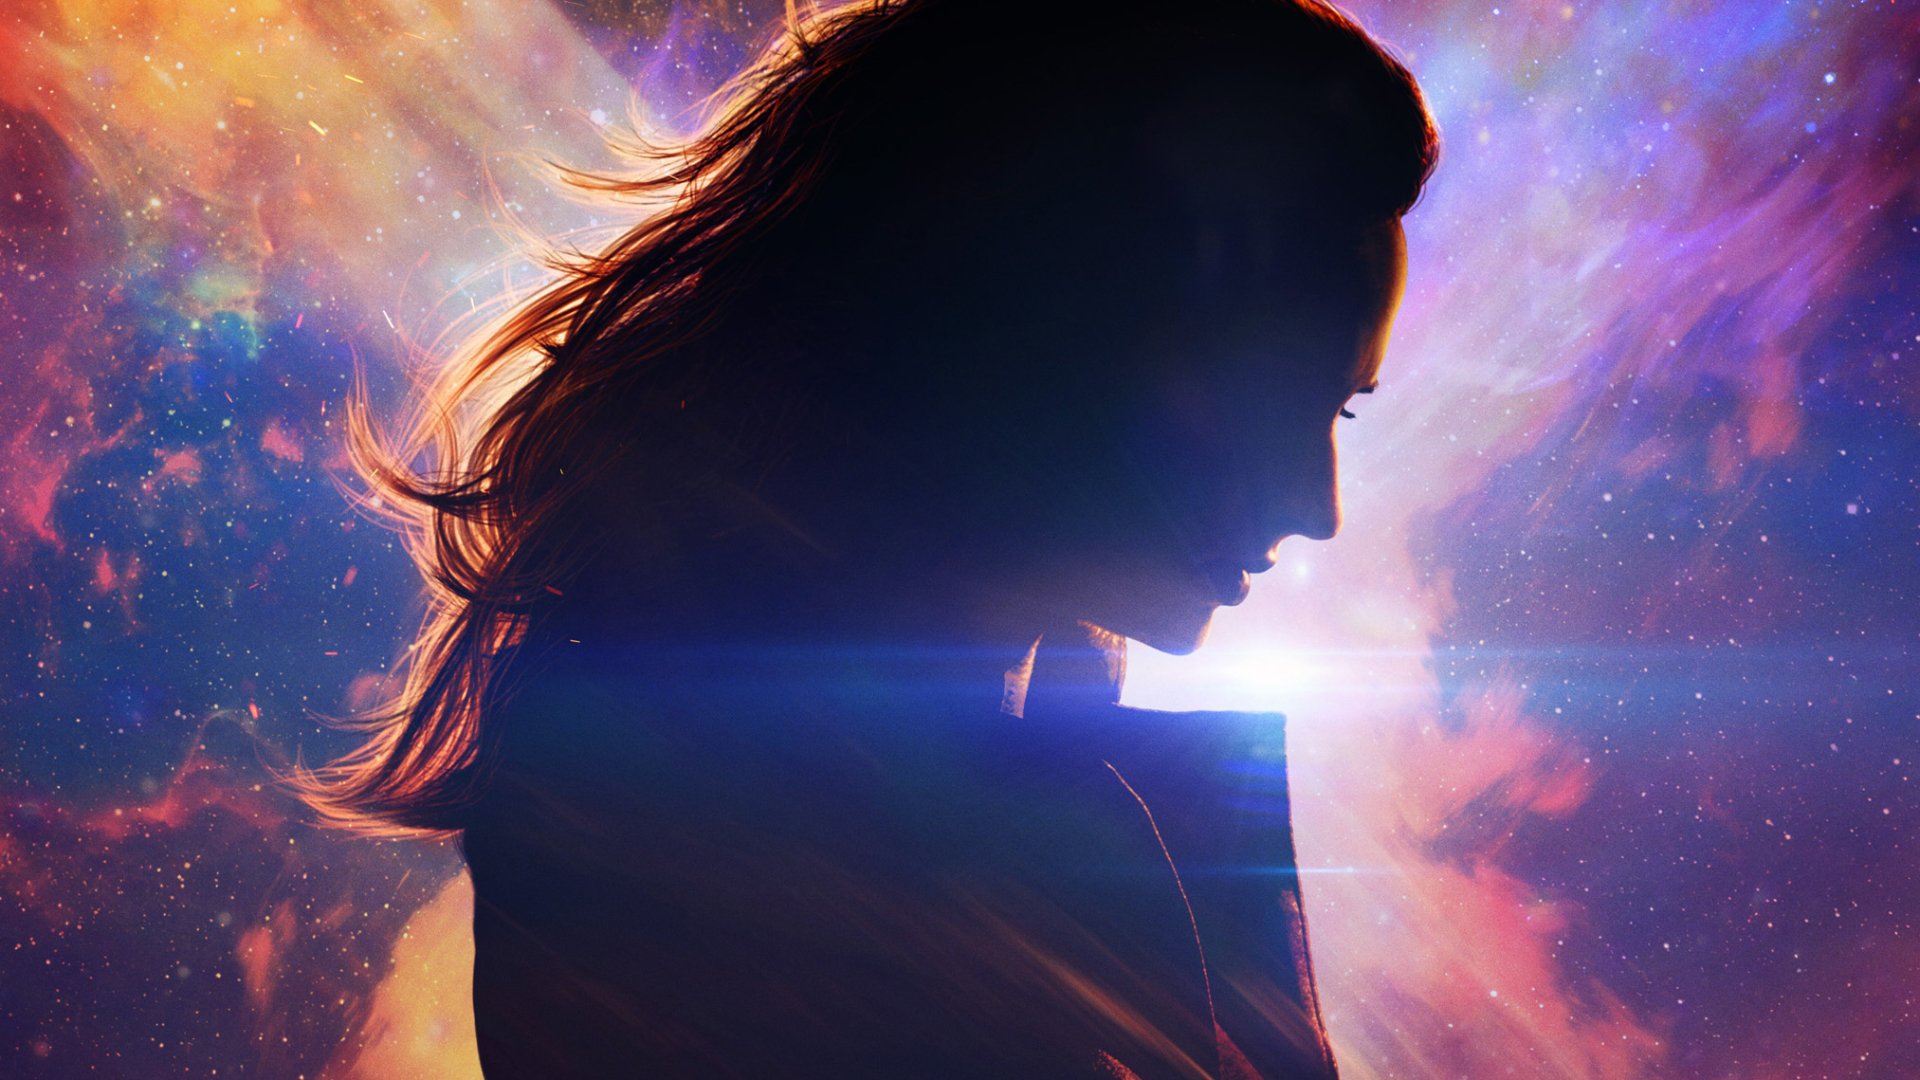 Sophie Turner X-Men: Dark Phoenix movie Dark Phoenix Image